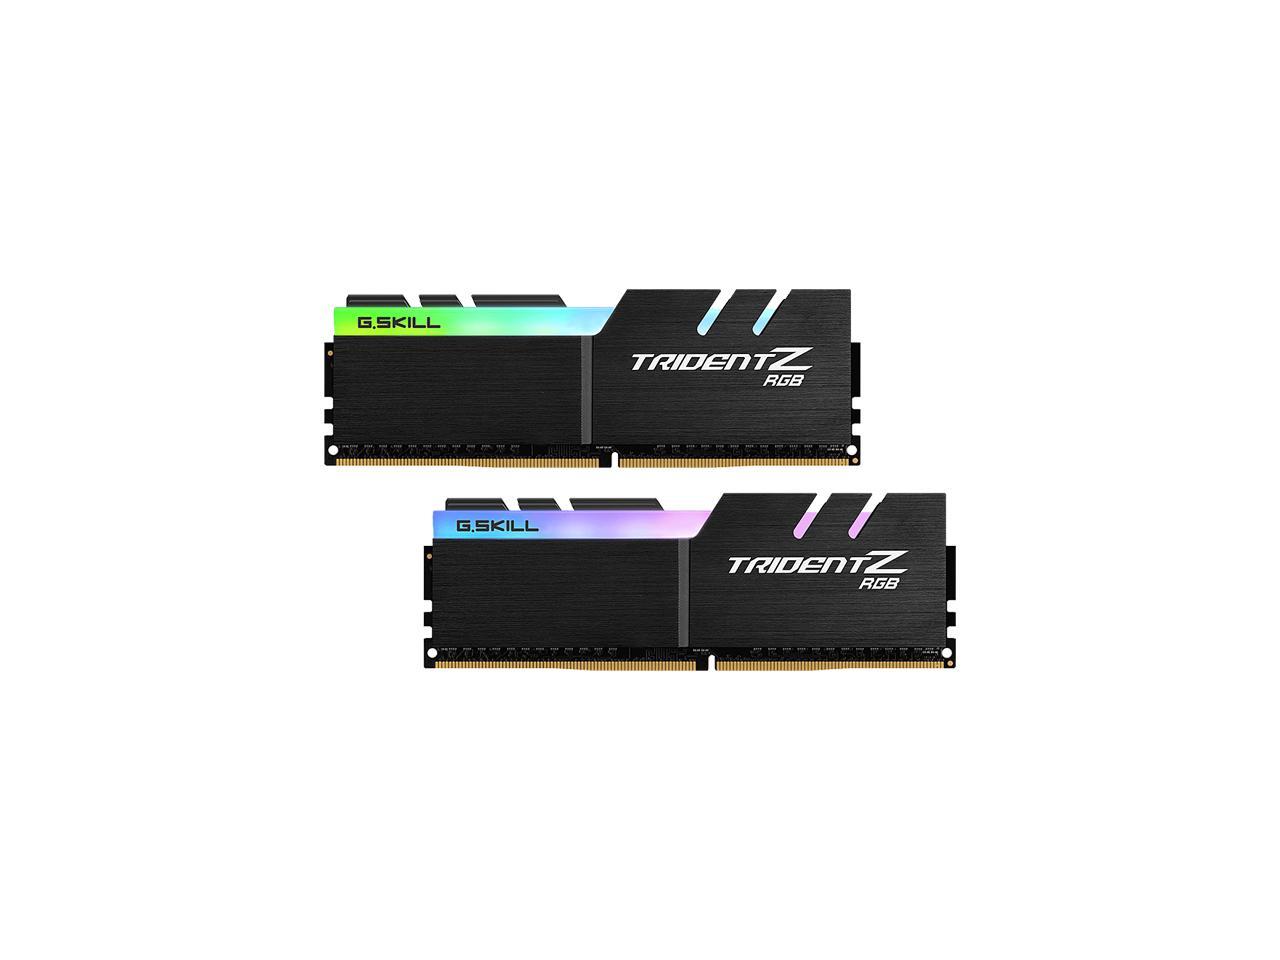 G.SKILL TridentZ RGB Series 16GB (2 x 8GB) 288-Pin DDR4 SDRAM DDR4 2933 (PC4 23400) Desktop Memory Model F4-2933C14D-16GTZRX